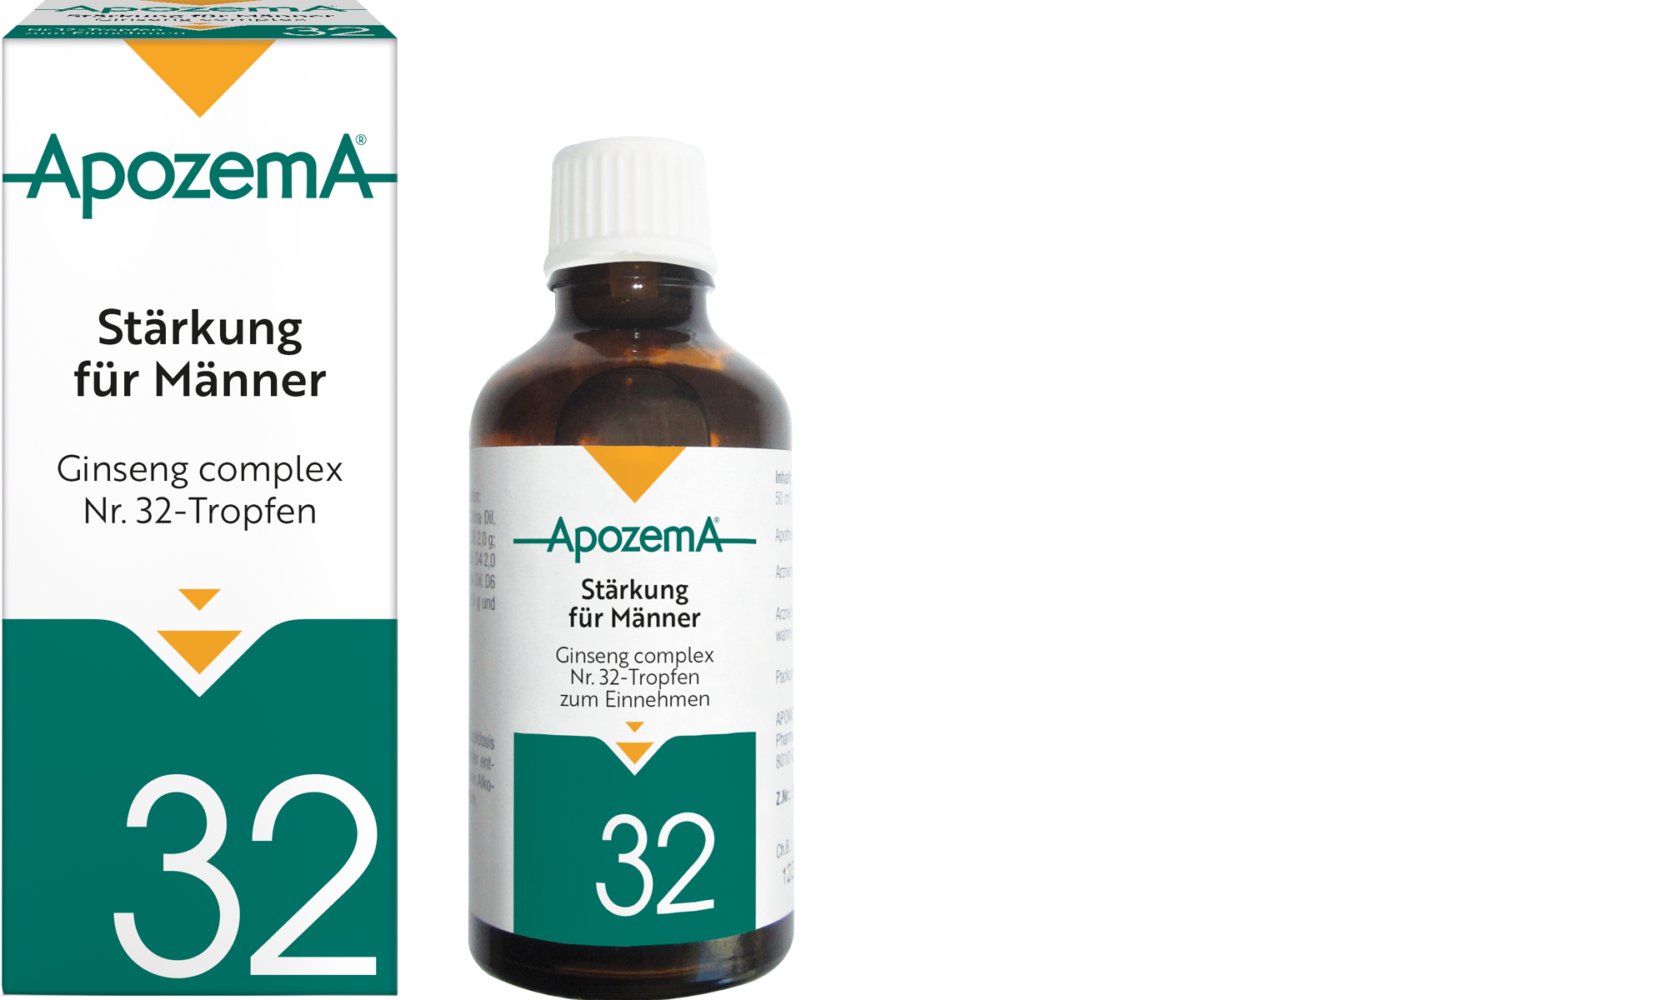 Apozema® Stärkung für Männer; Ginseng complex Nr. 32-Tropfen